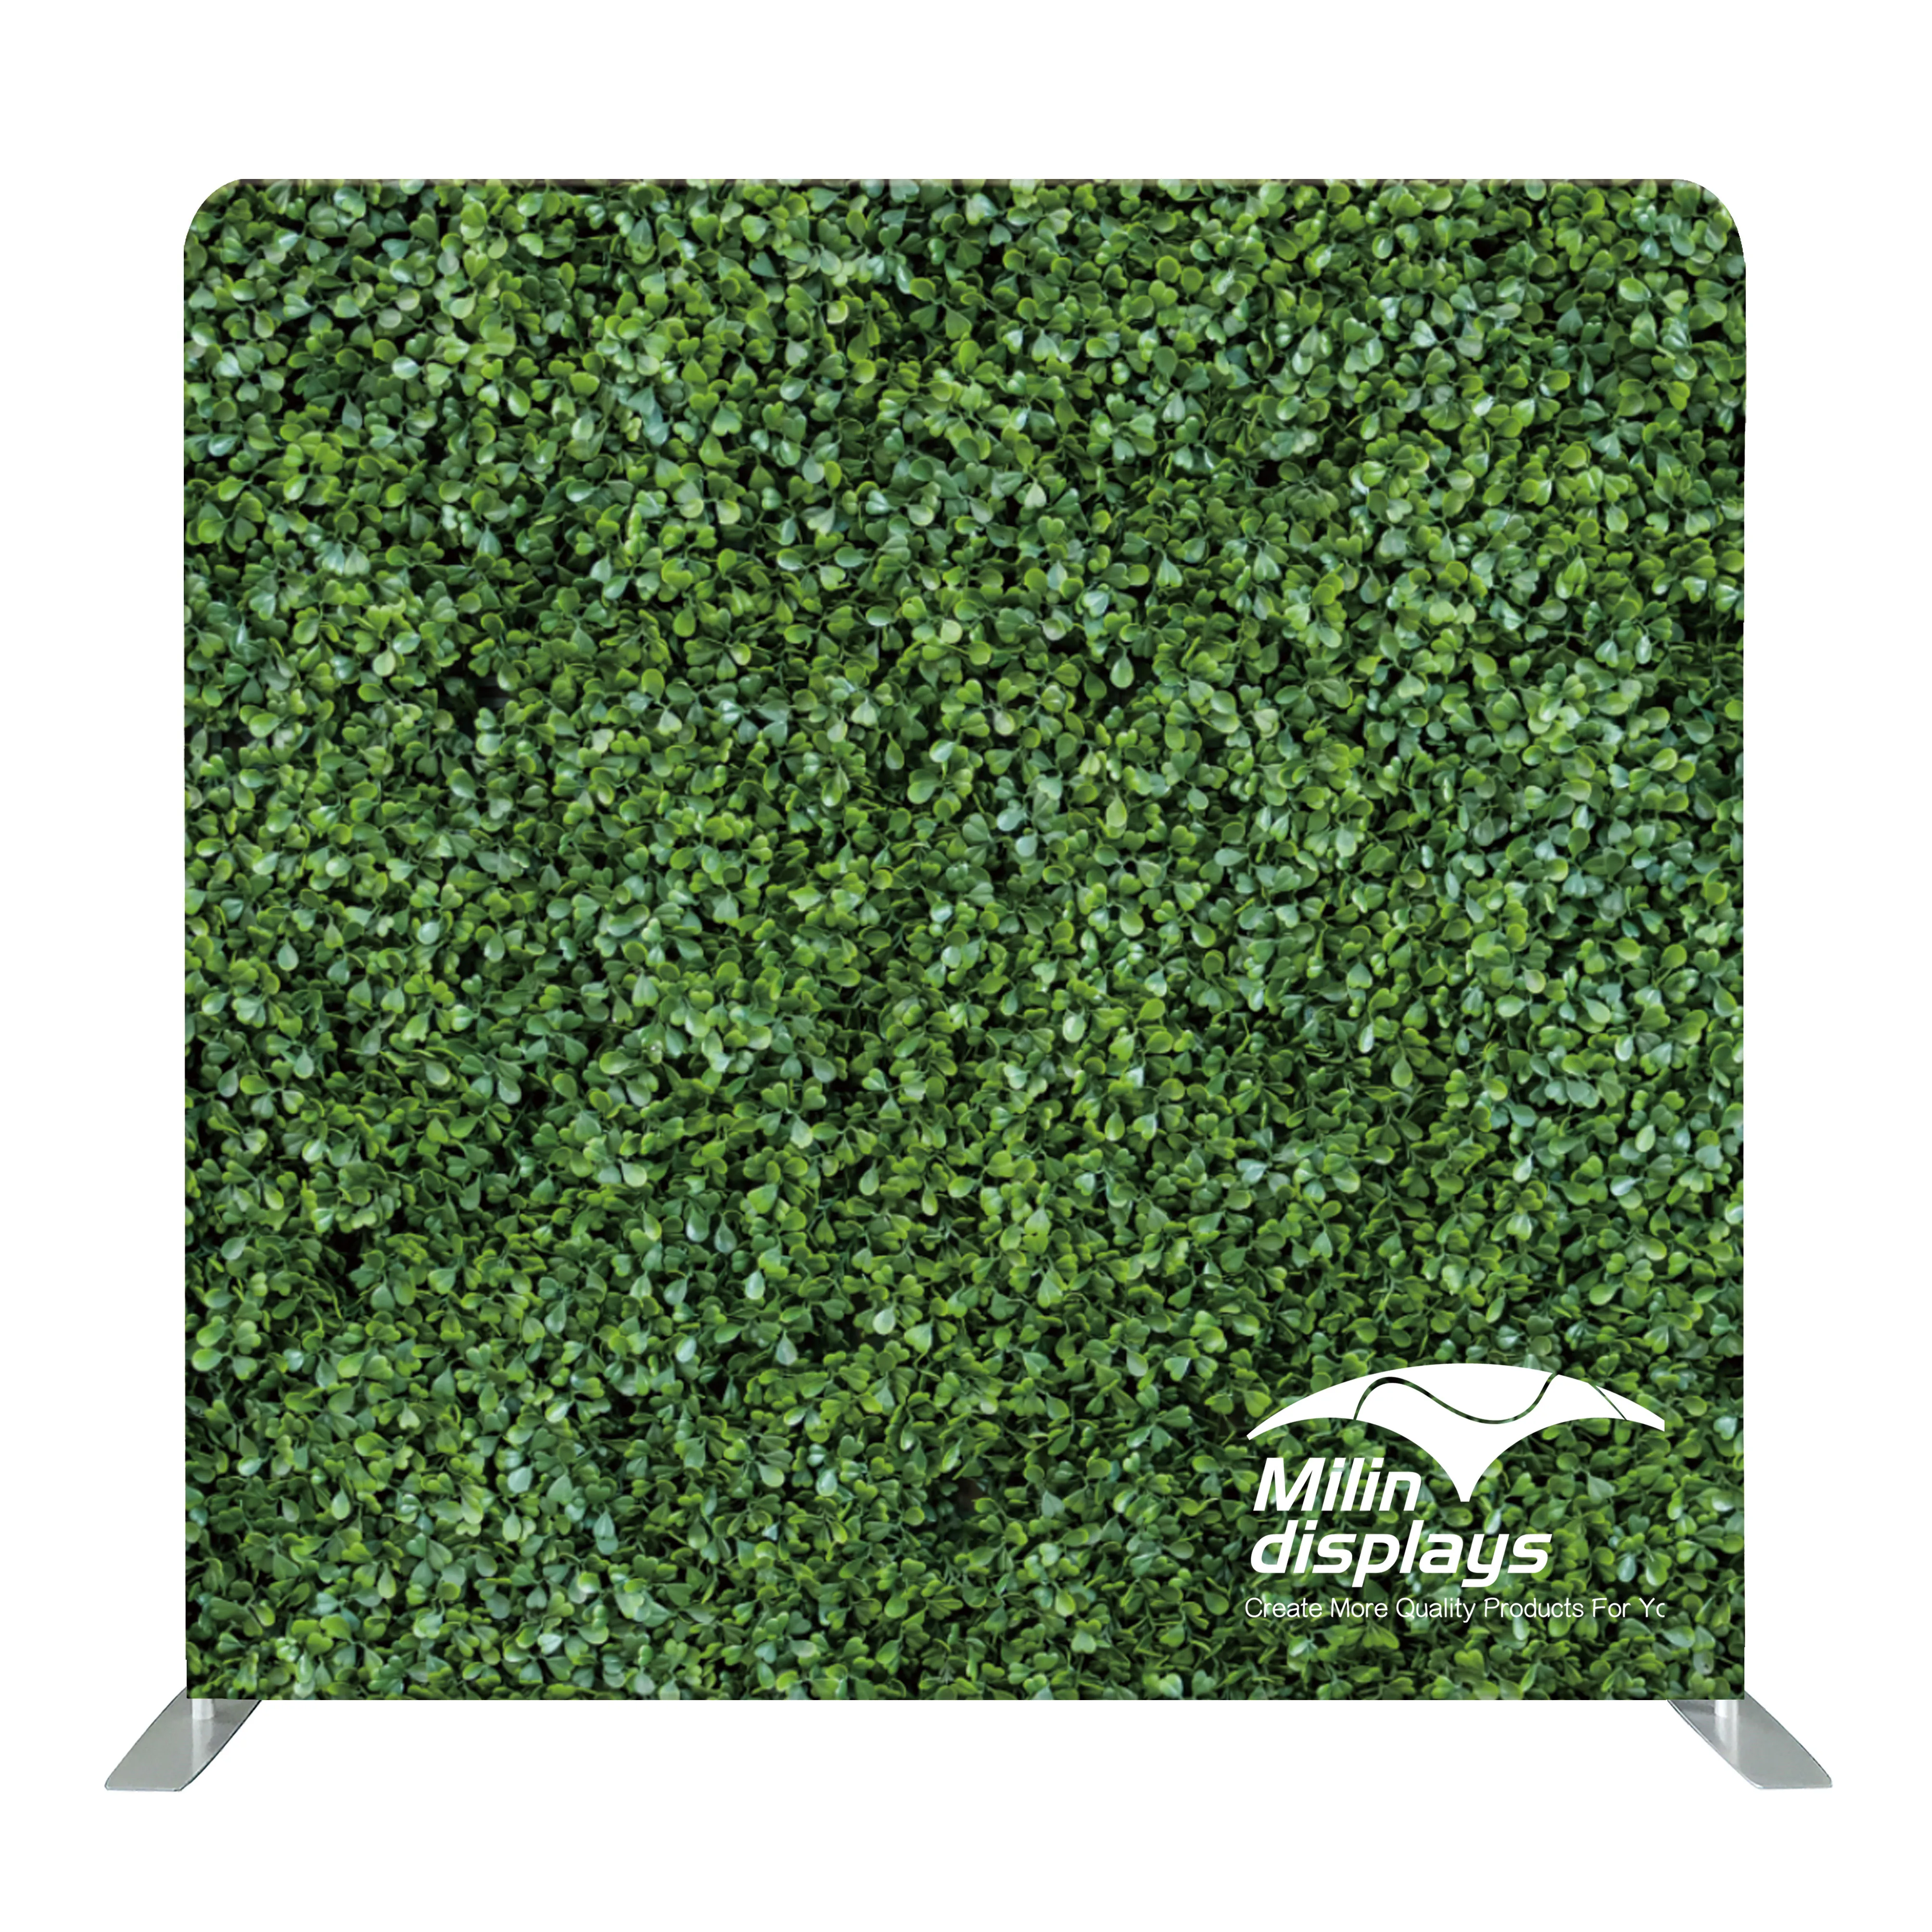 Chroma Key Green Screen Background Fabric cung cấp cho bạn một hình nền xanh chuyên nghiệp để quay video và chụp ảnh. Với chất liệu vải cao cấp, độ bền tốt, màu xanh nền tuyệt đẹp, sản phẩm này giúp bạn tạo ra các hiệu ứng hình ảnh độc đáo và thu hút mọi ánh nhìn, đạt được hiệu quả tốt nhất.